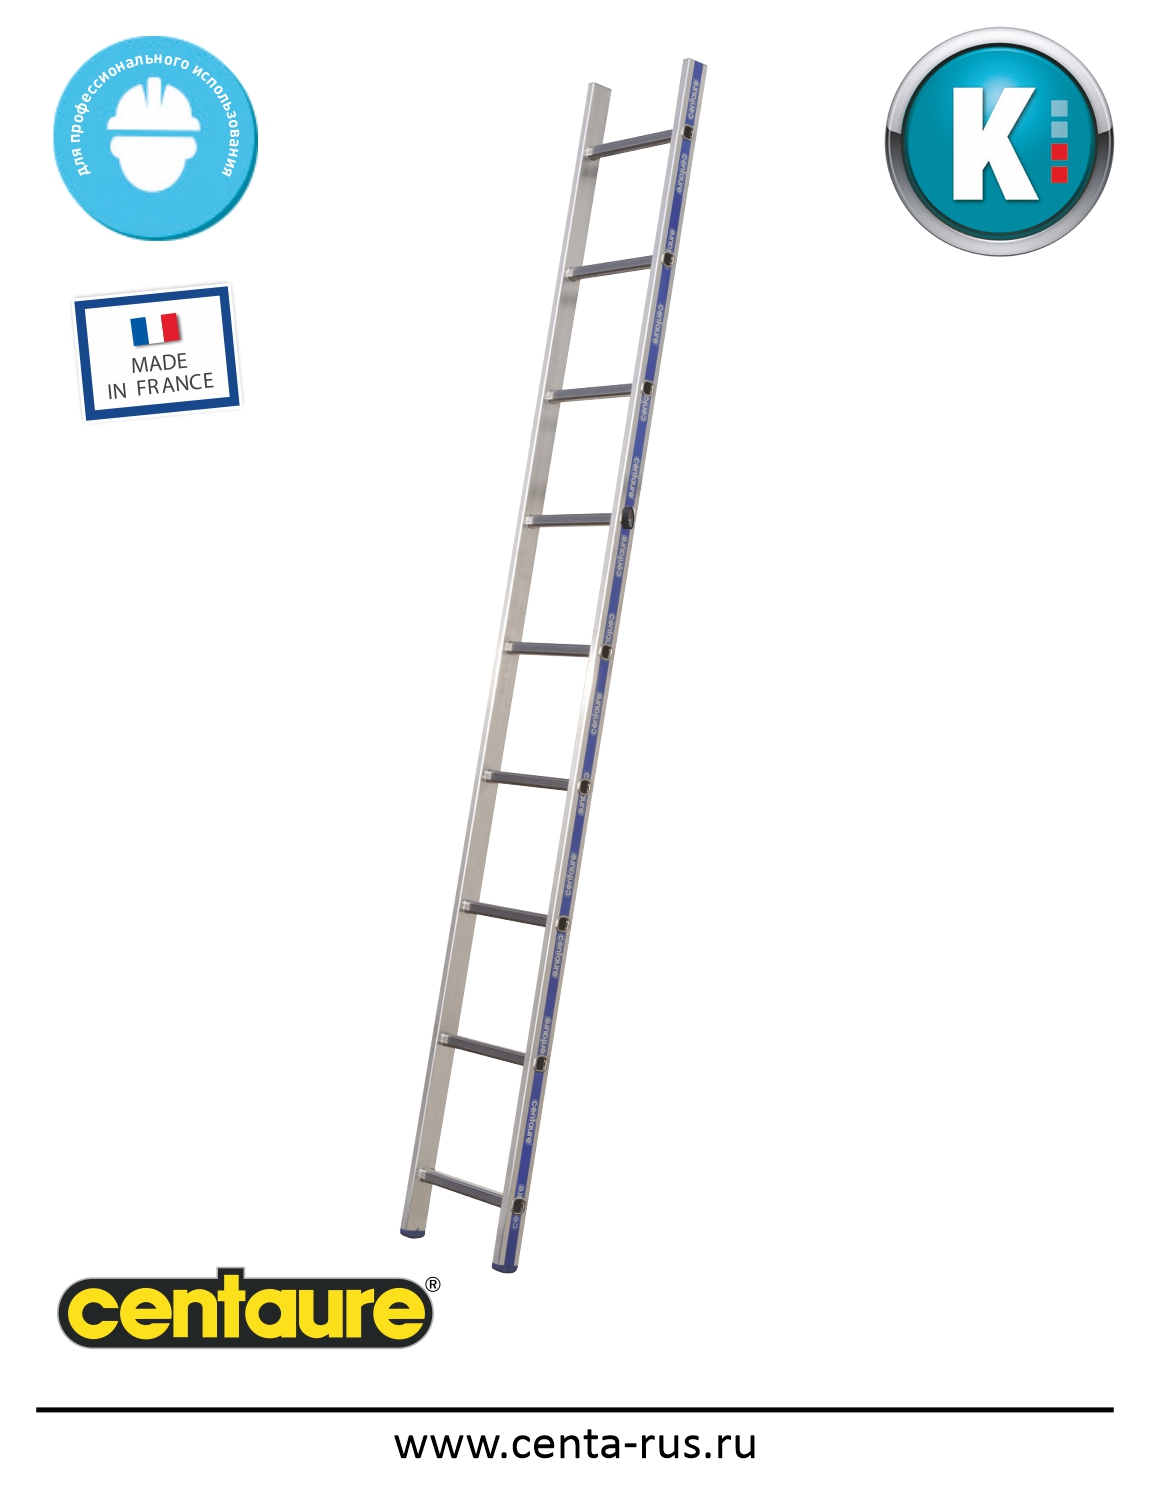 Односекционная лестница Centaure KS 8 ступеней 203108